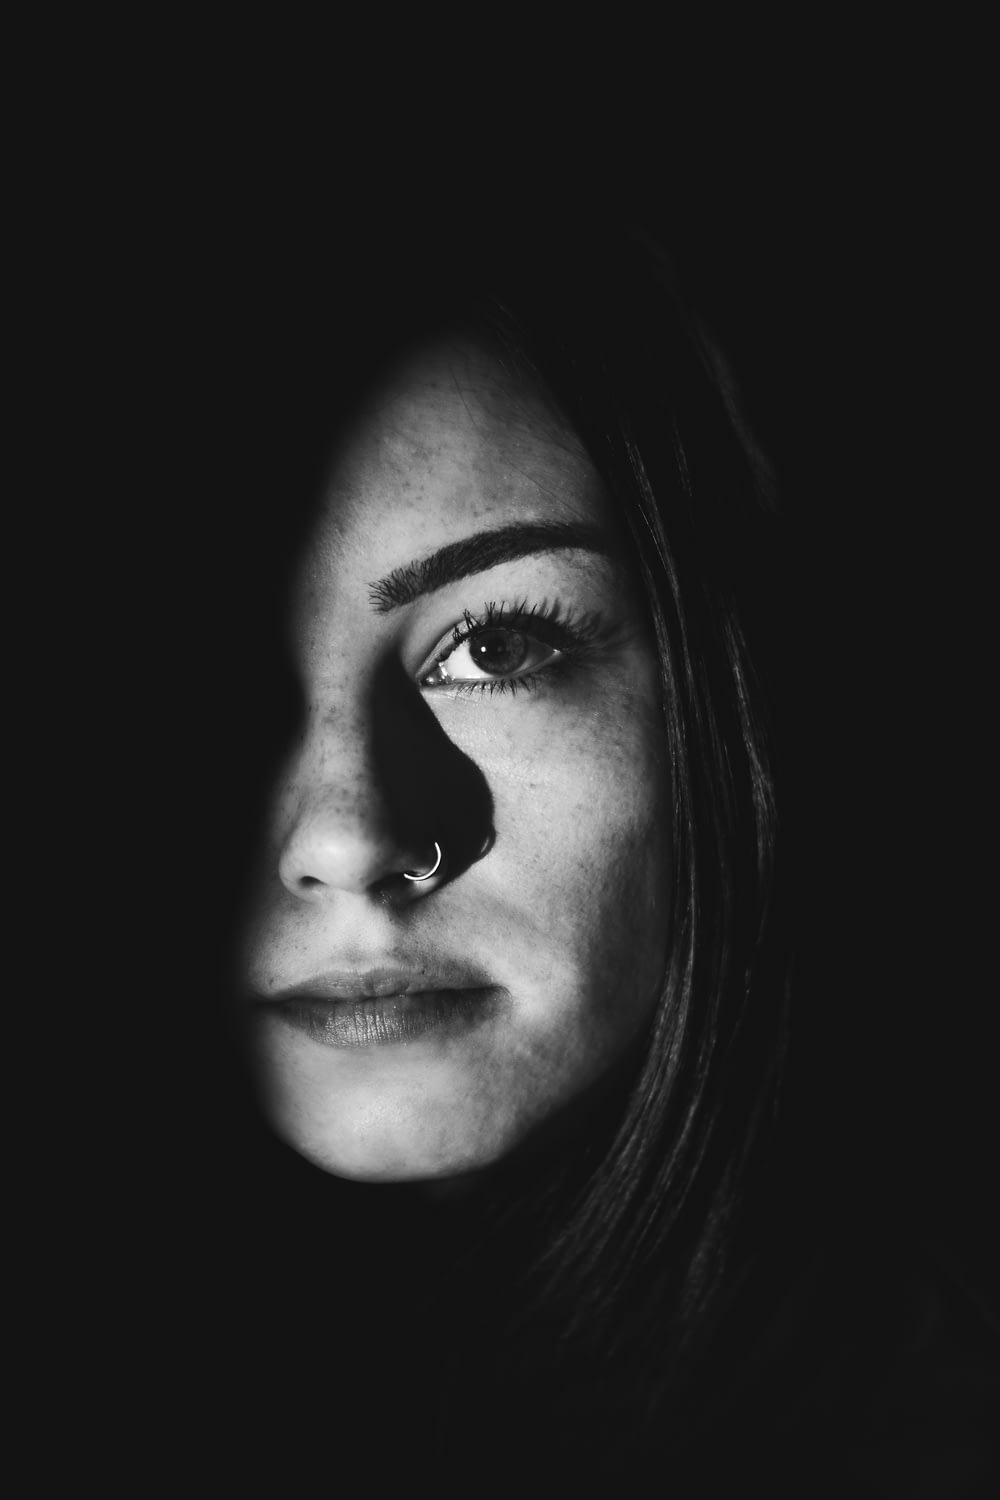 foto in scala di grigi del viso della donna